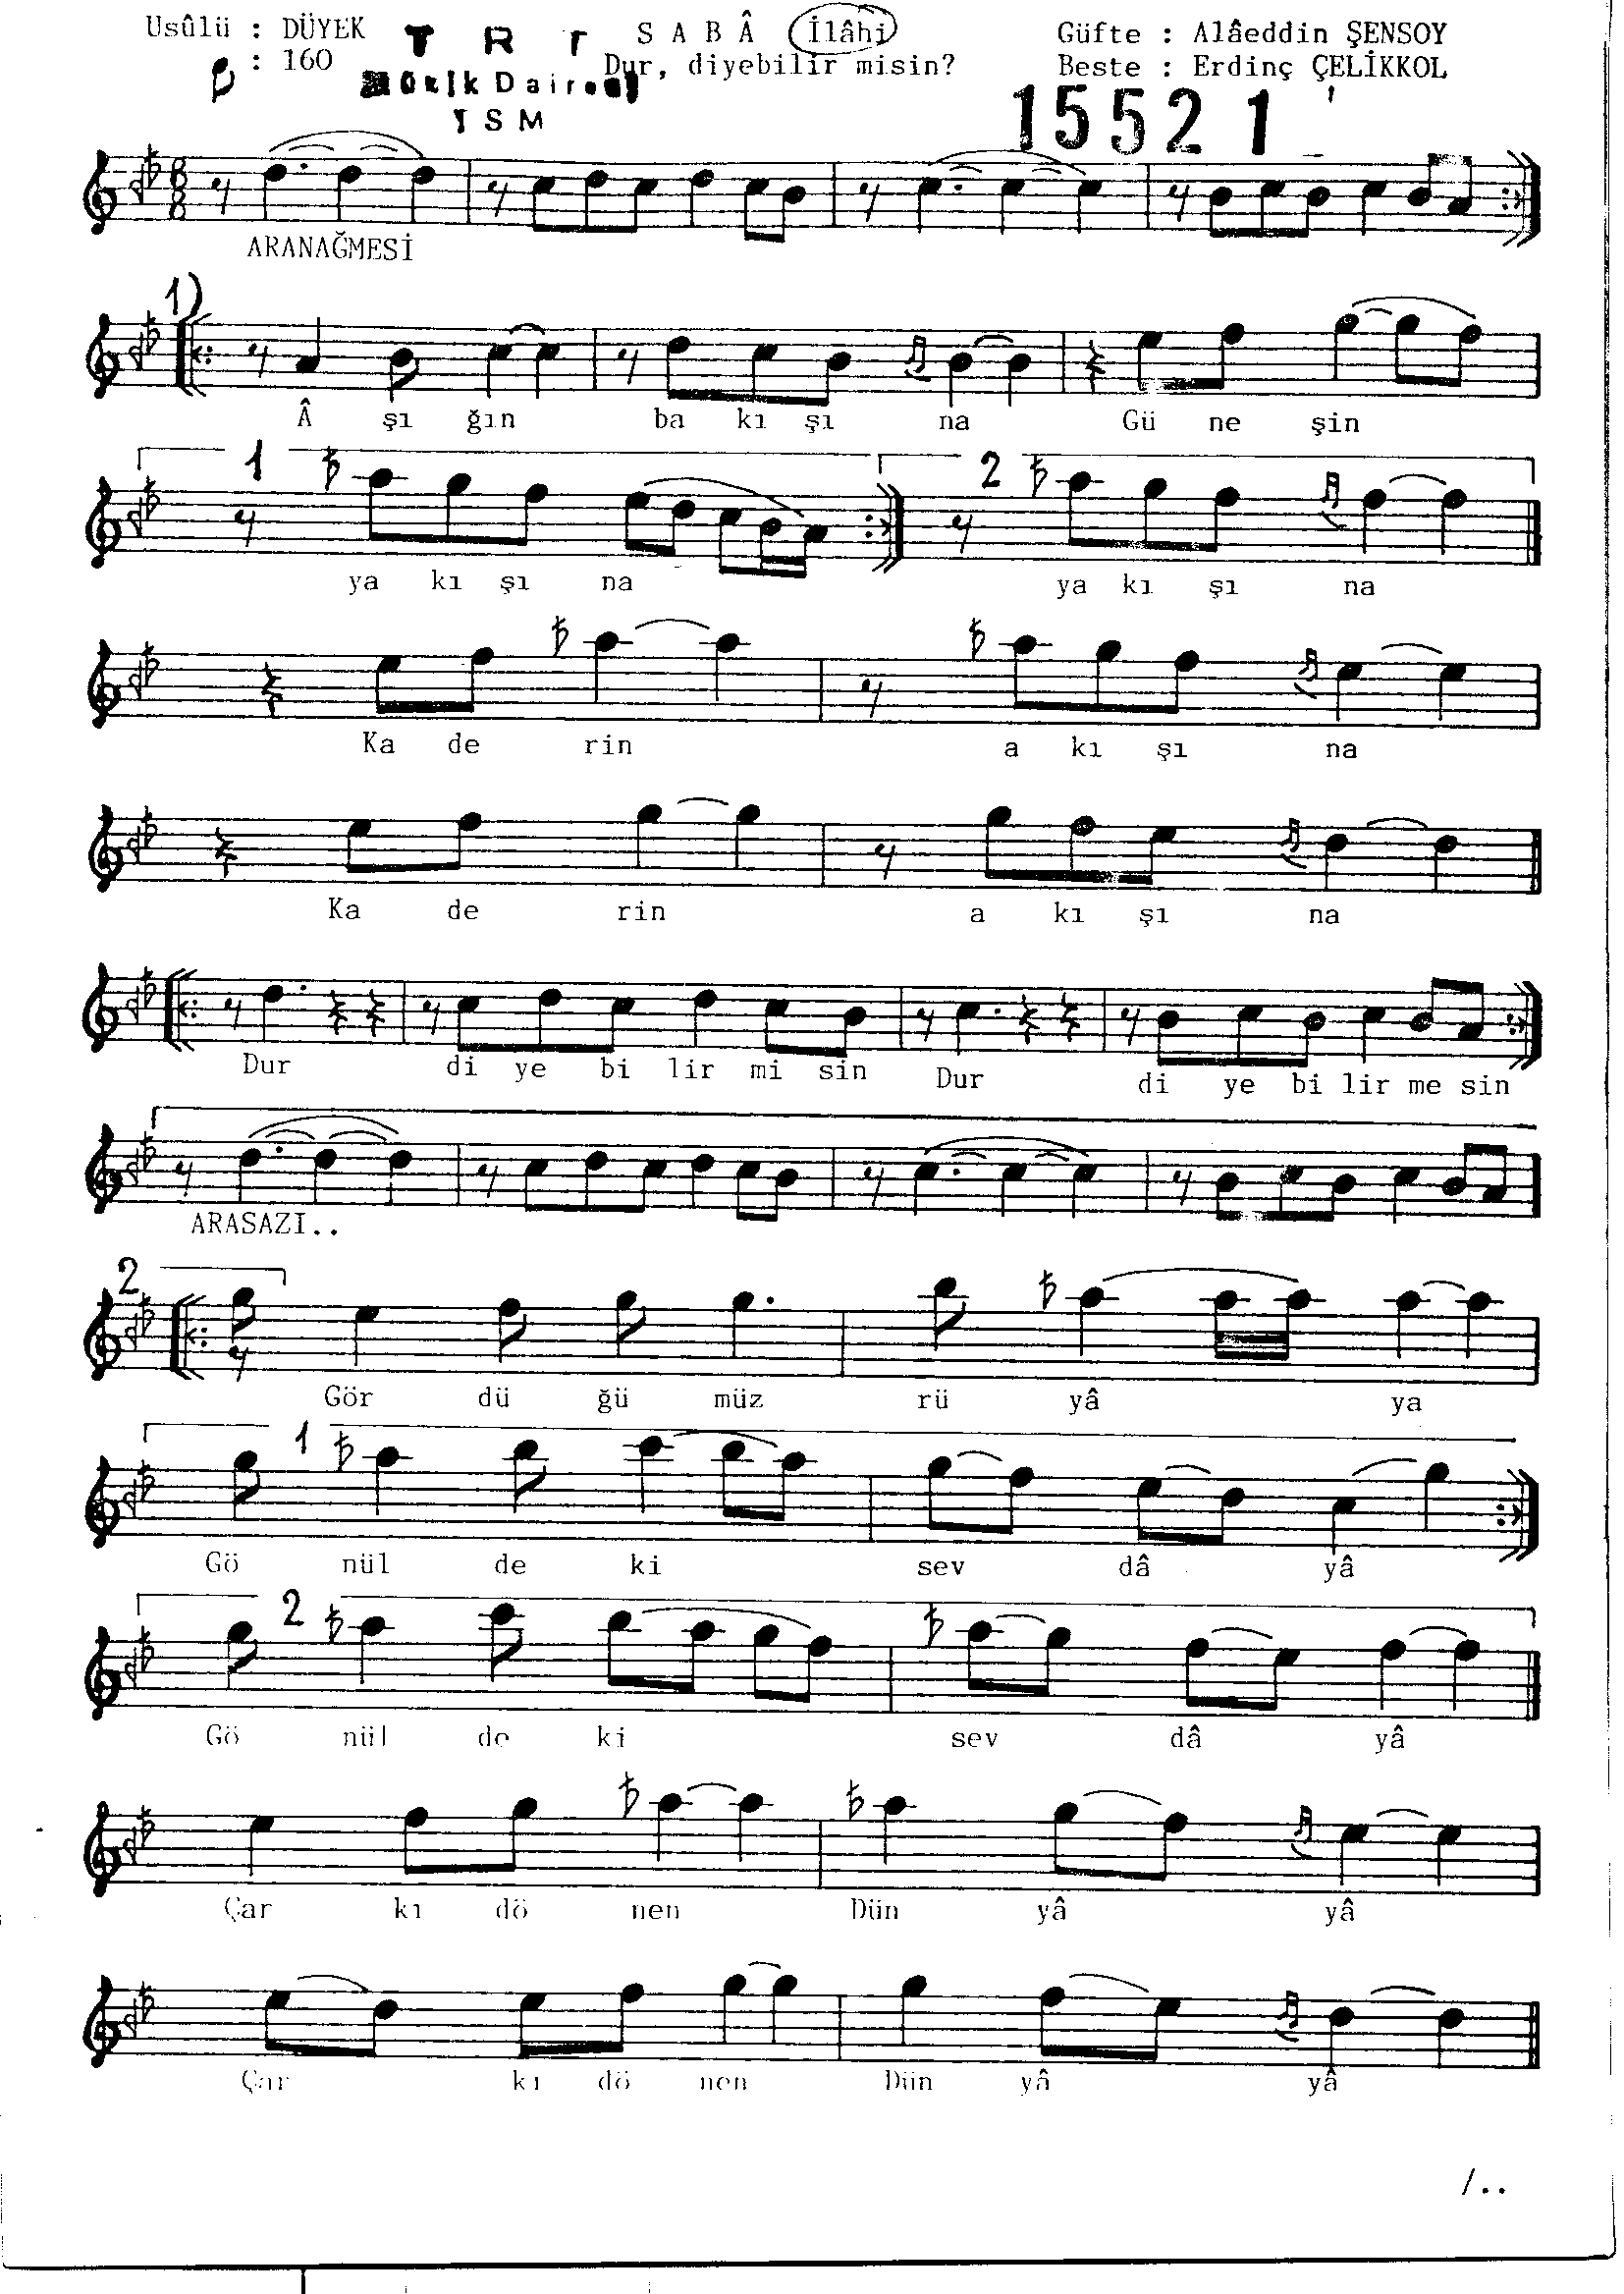 Sabâ - Şarkı - Erdinç Çelikkol - Sayfa 1